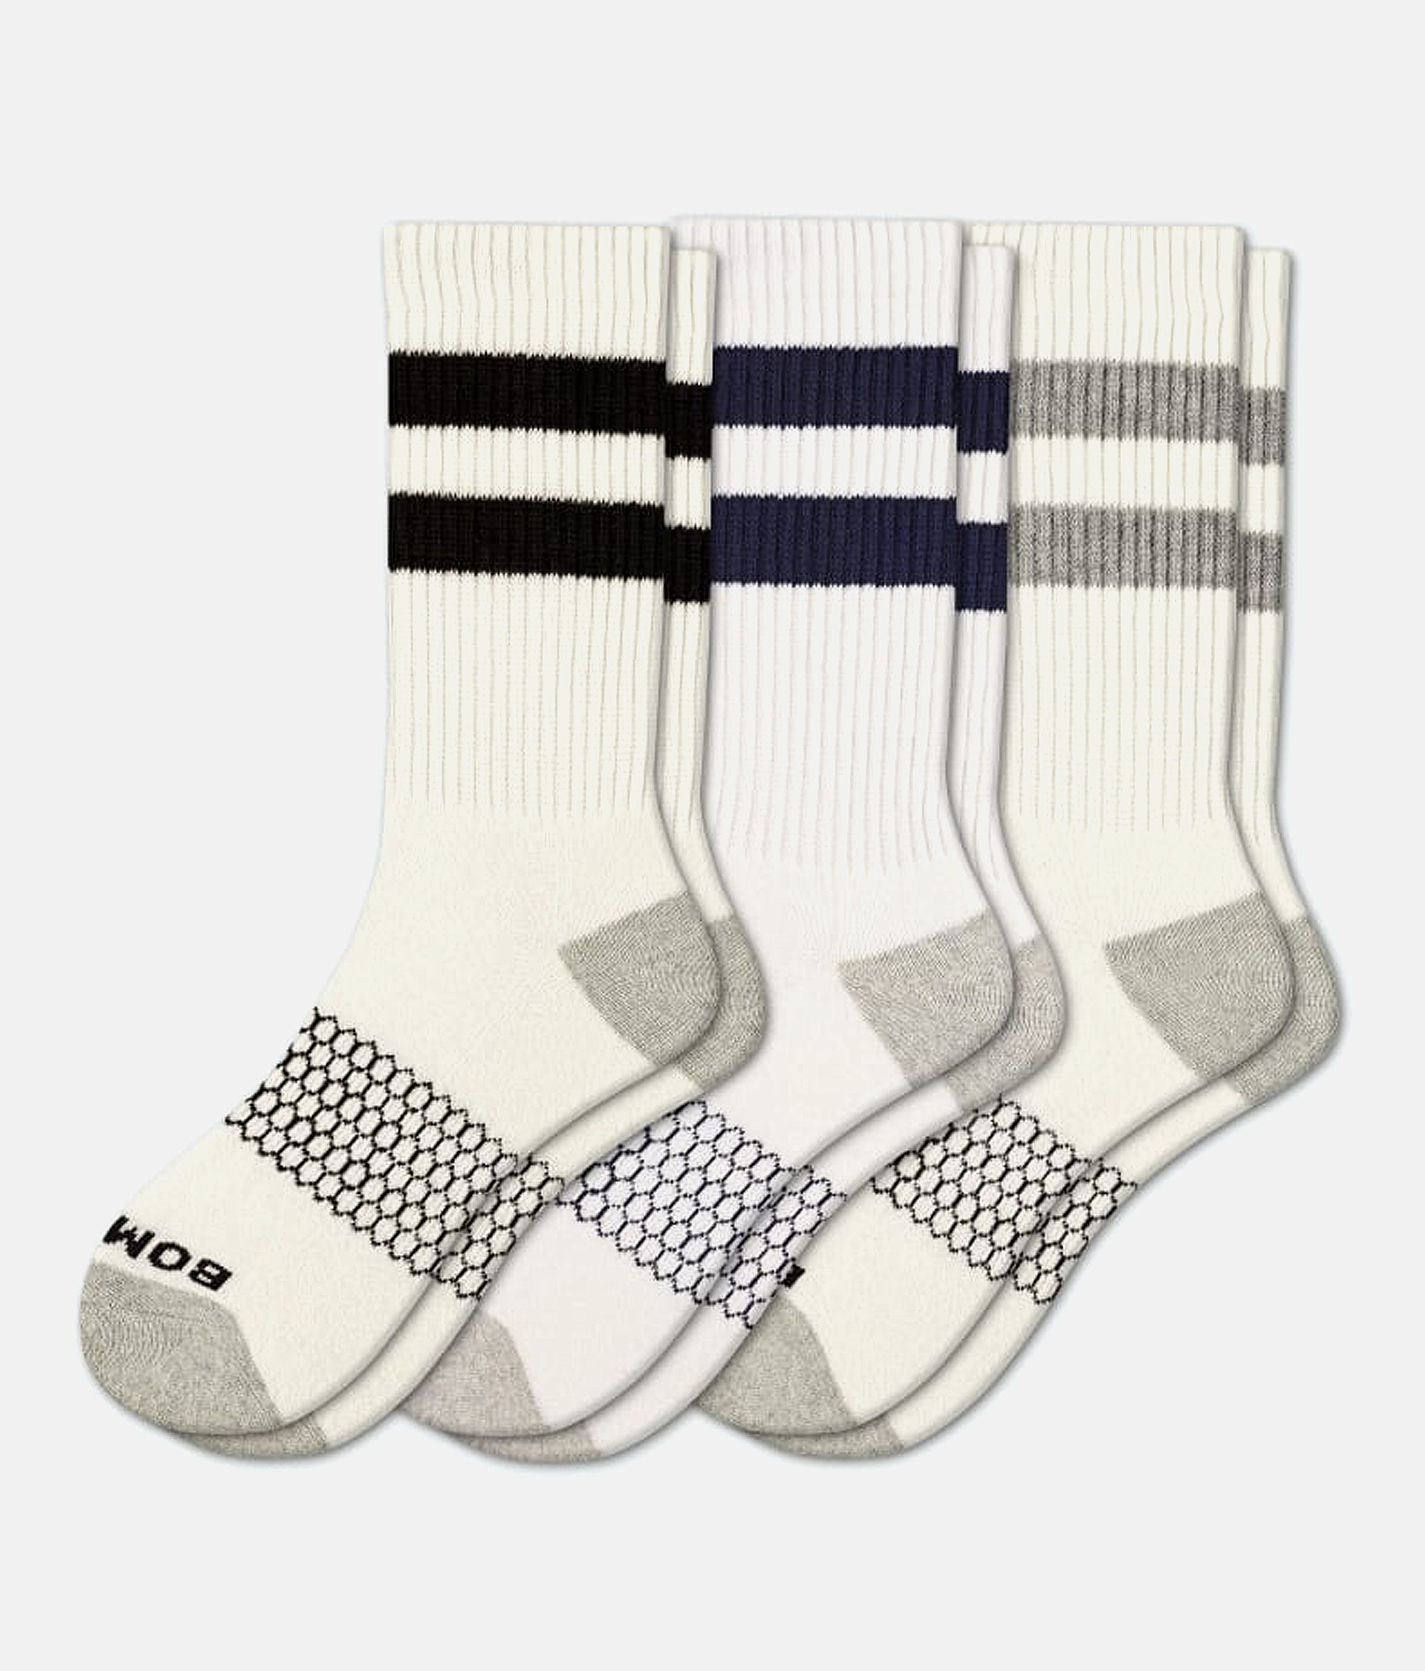 Bombas® Vintage Stripe 3 Pack Socks - Men's Socks in White Multi